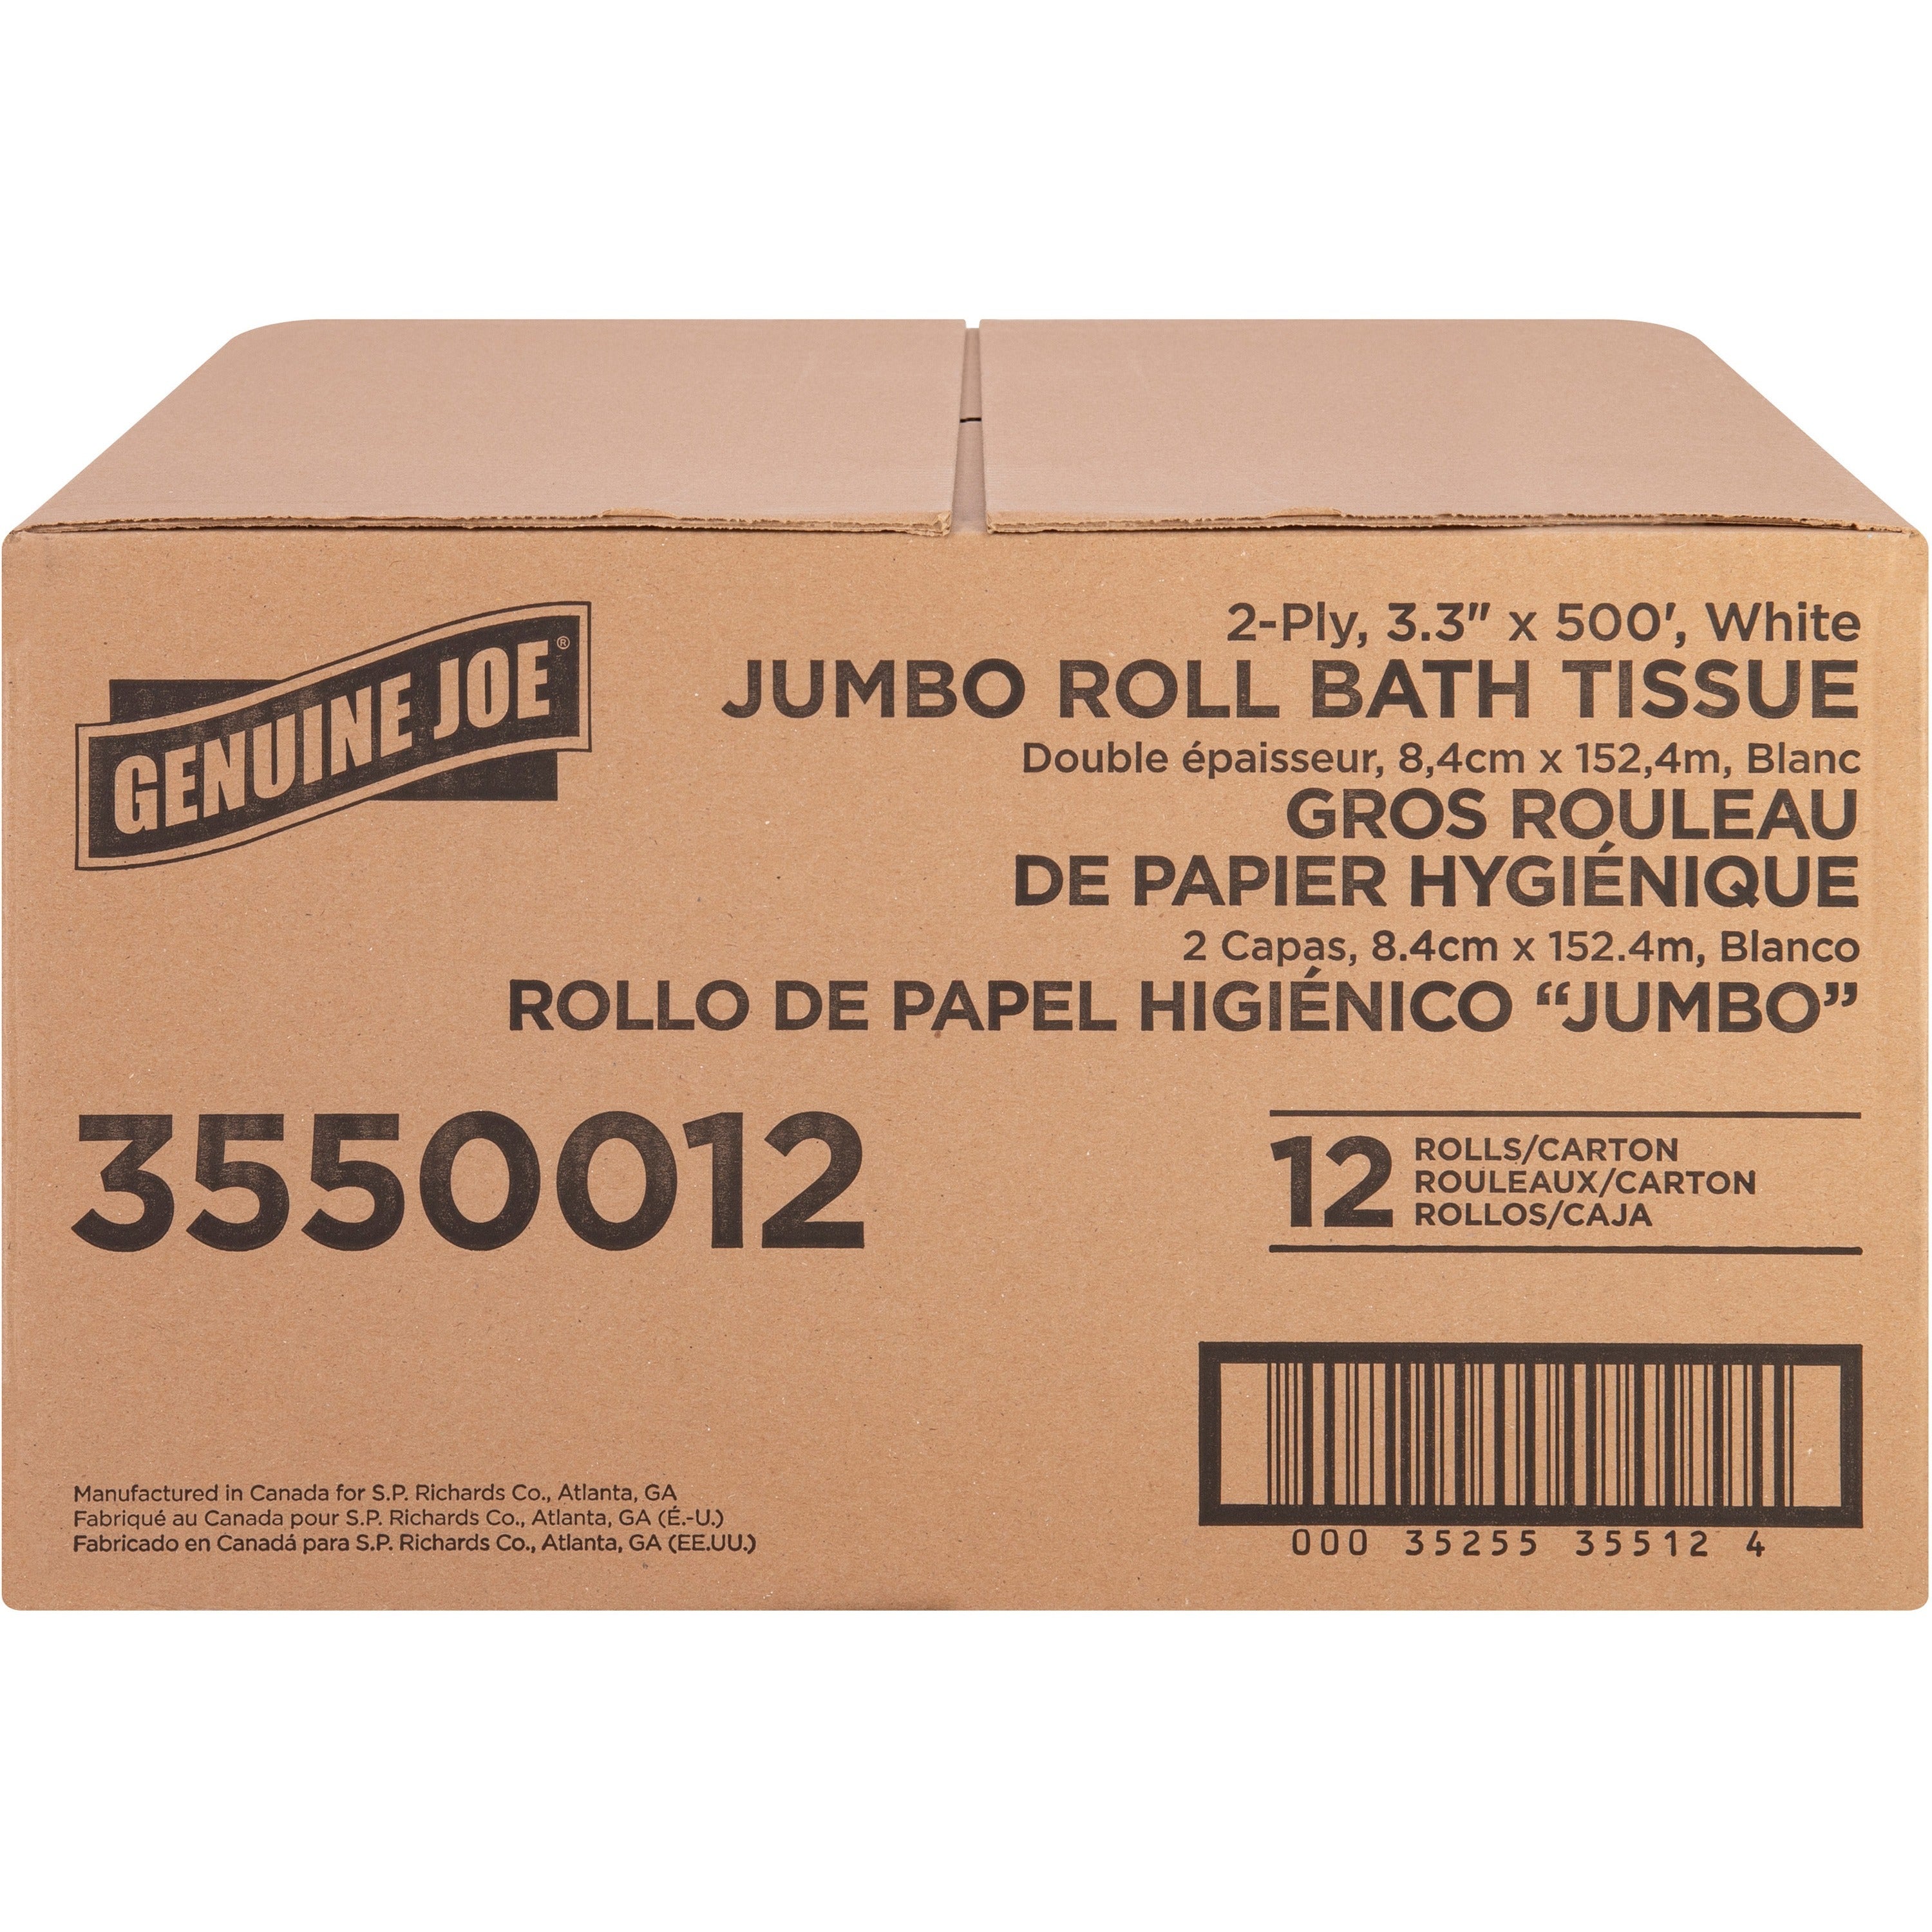 genuine-joe-jumbo-jr-dispenser-bath-tissue-roll-2-ply-330-x-500-ft-888-roll-diameter-white-fiber-sewer-safe-septic-safe-for-bathroom-12-carton_gjo3550012 - 3